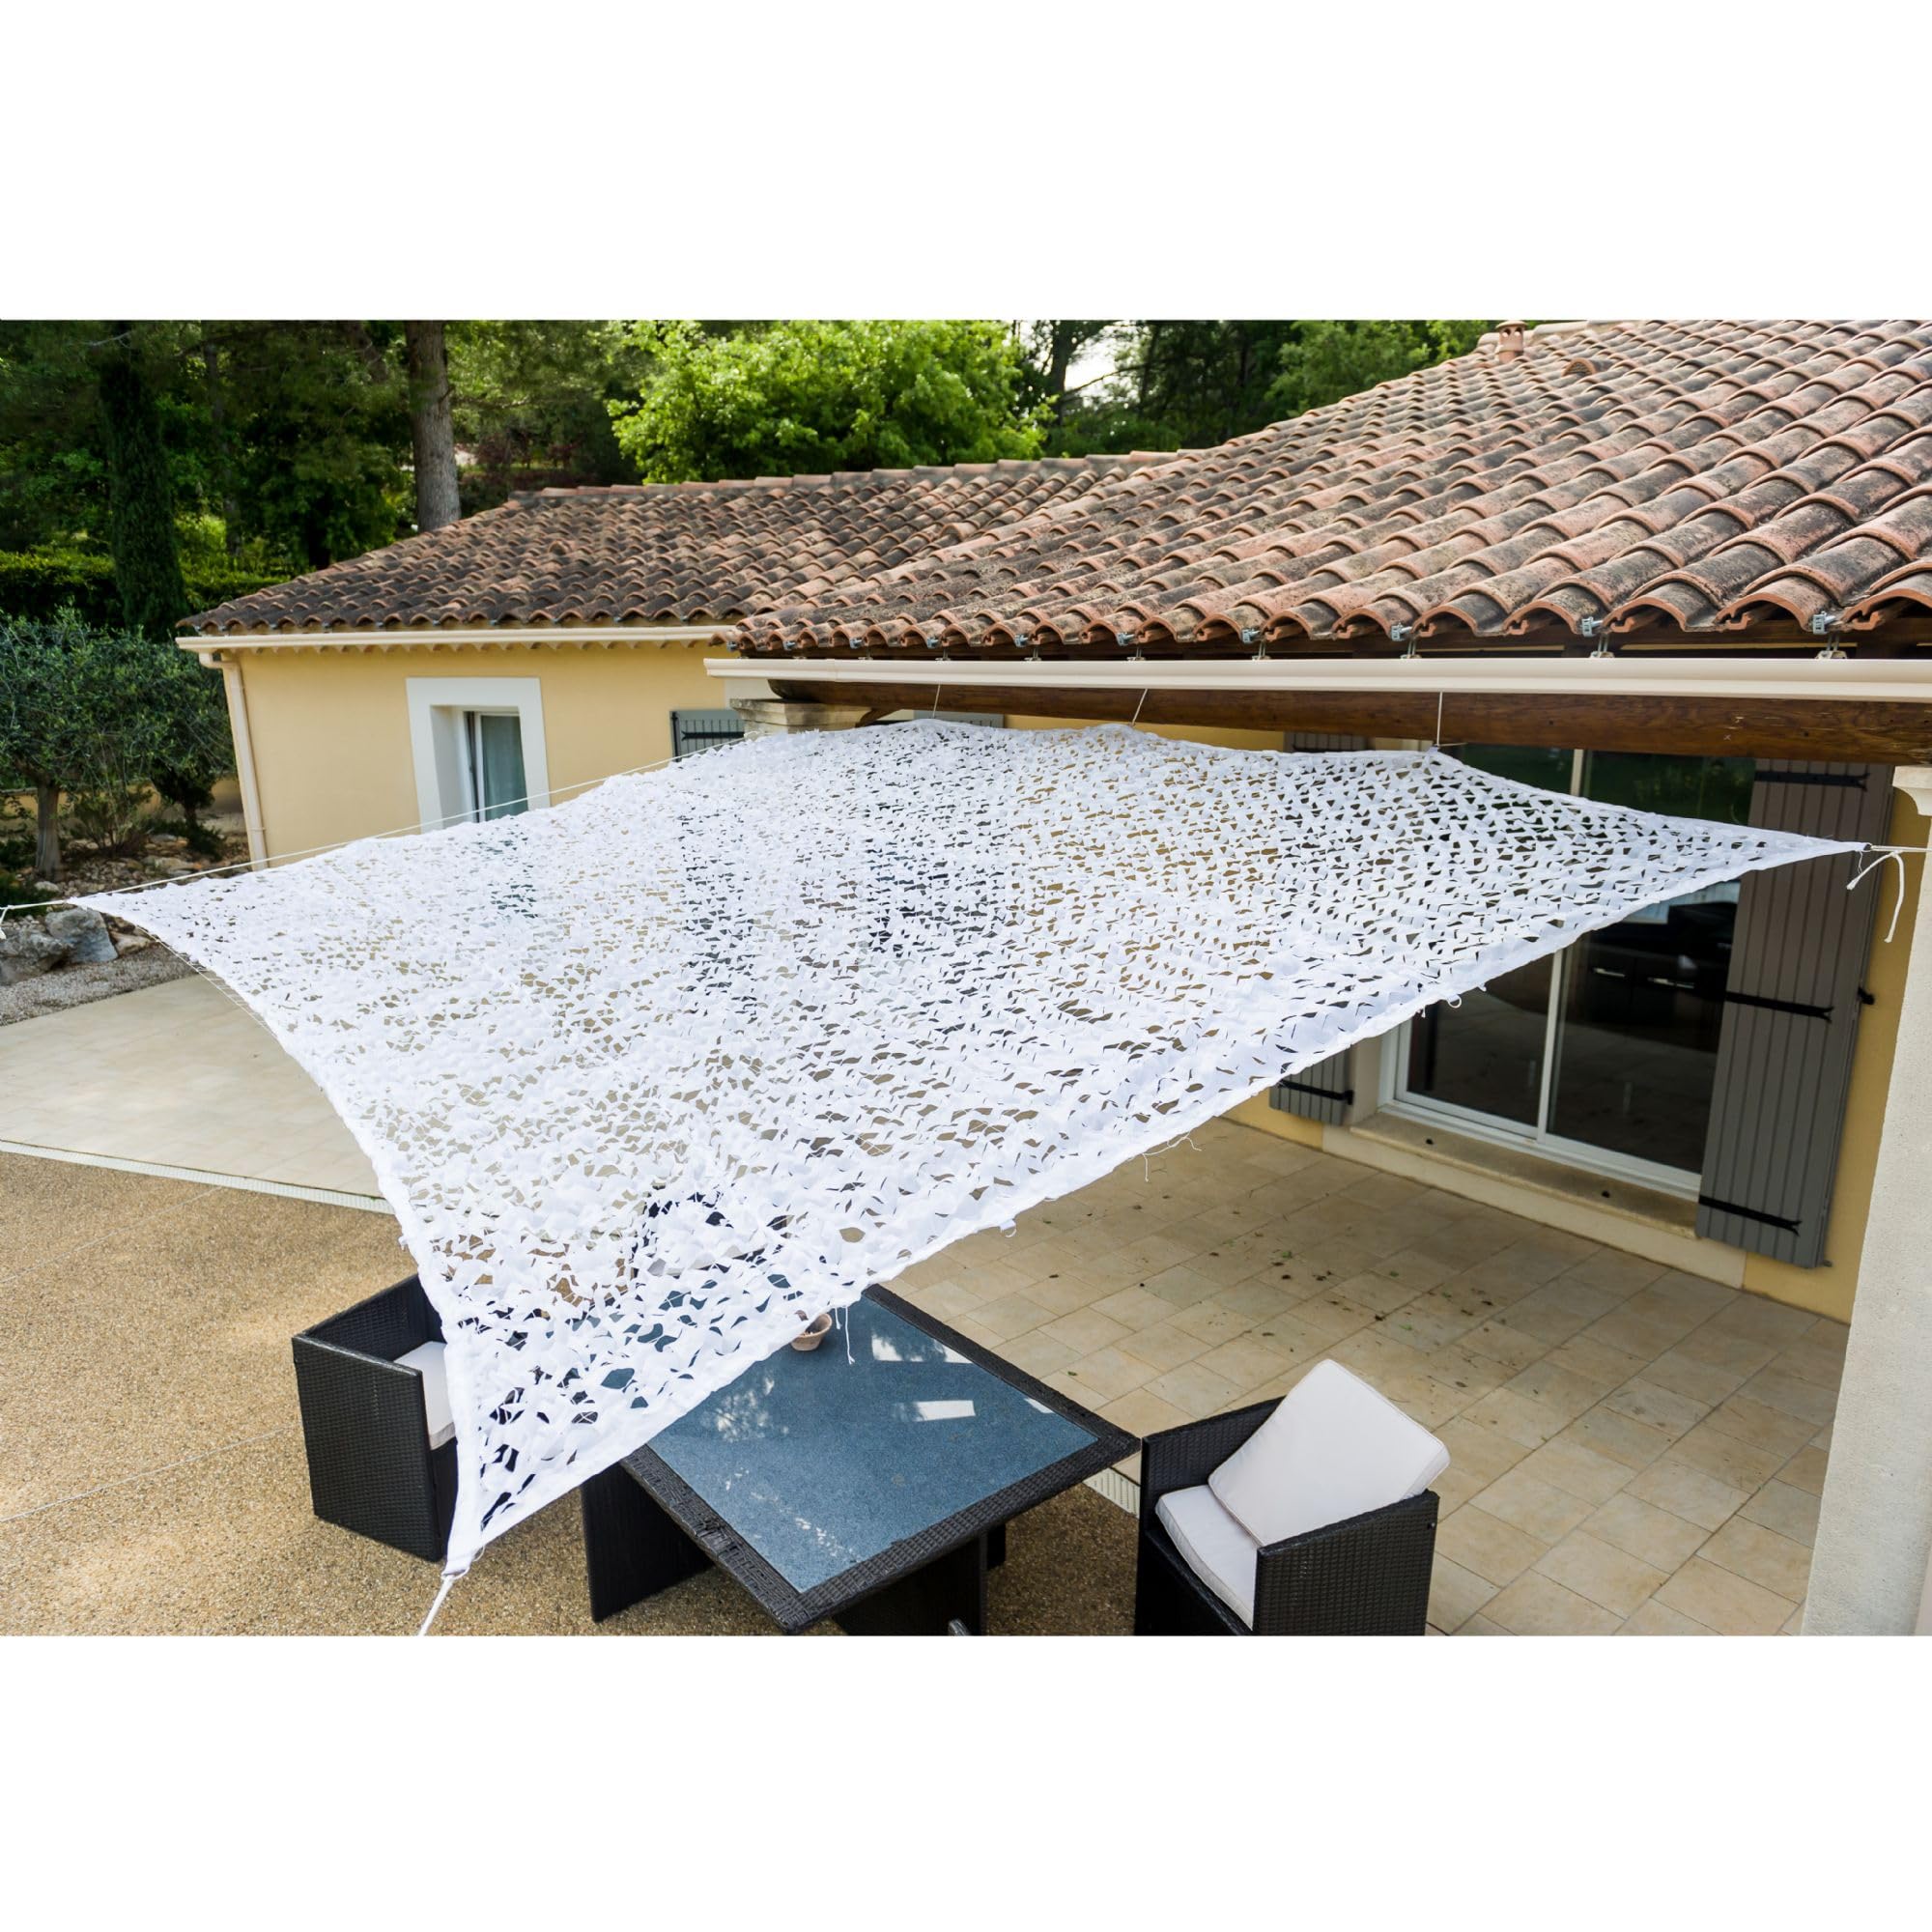 WerkaPro 10105 - Sonnensegel aus Polyester, rechteckig, für Balkon, Terrasse und Garten